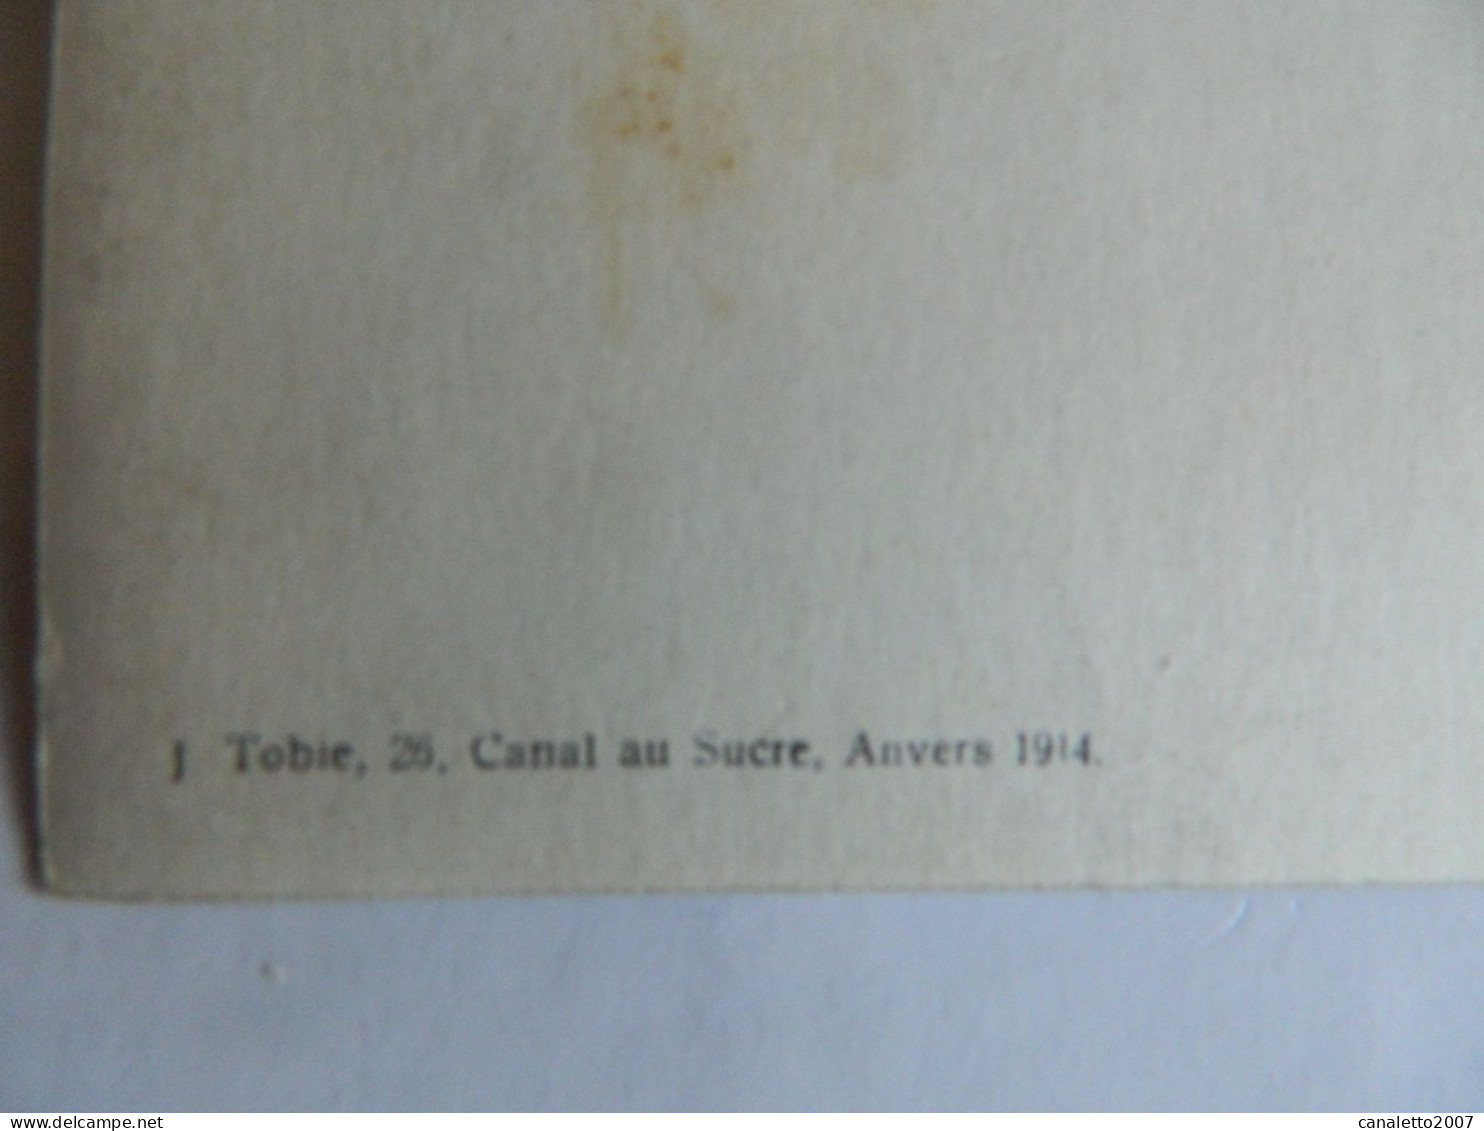 MILITARIA+ANVERS:PHOTO CARTE DE MILITAIRE EN 1913 FAIT PAR J.TOBIE 26 CANAL AU SUCRE ANVERS - Personen